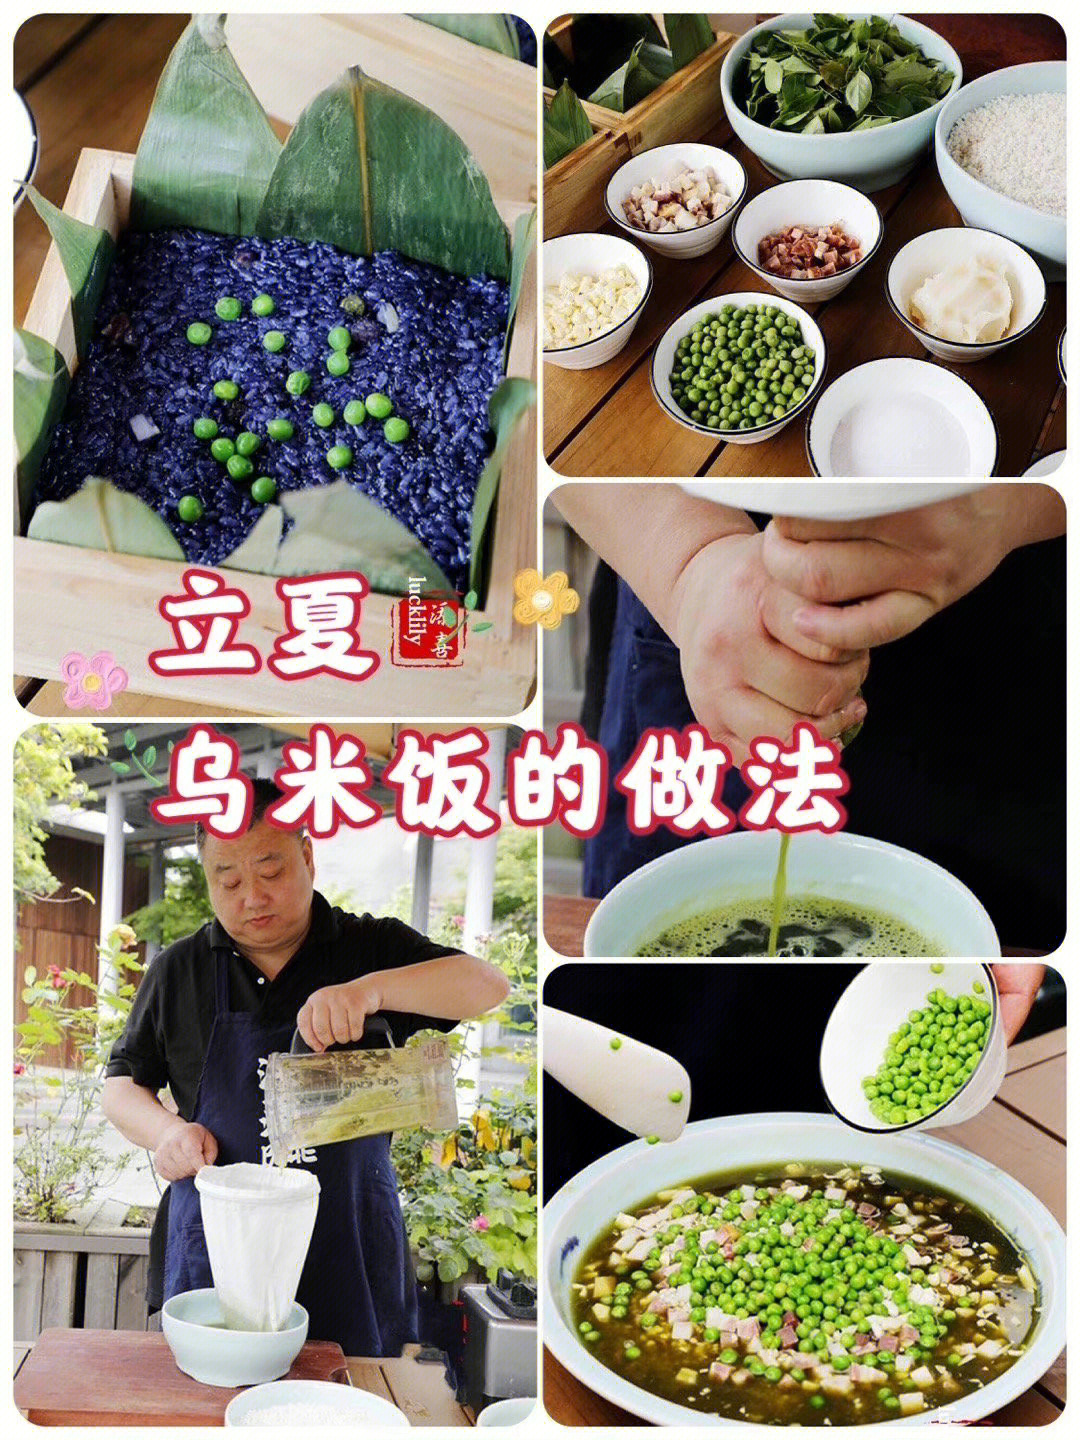 7815我国民间有立夏吃乌米饭的传统,乌米饭是一种紫黑色的糯米饭